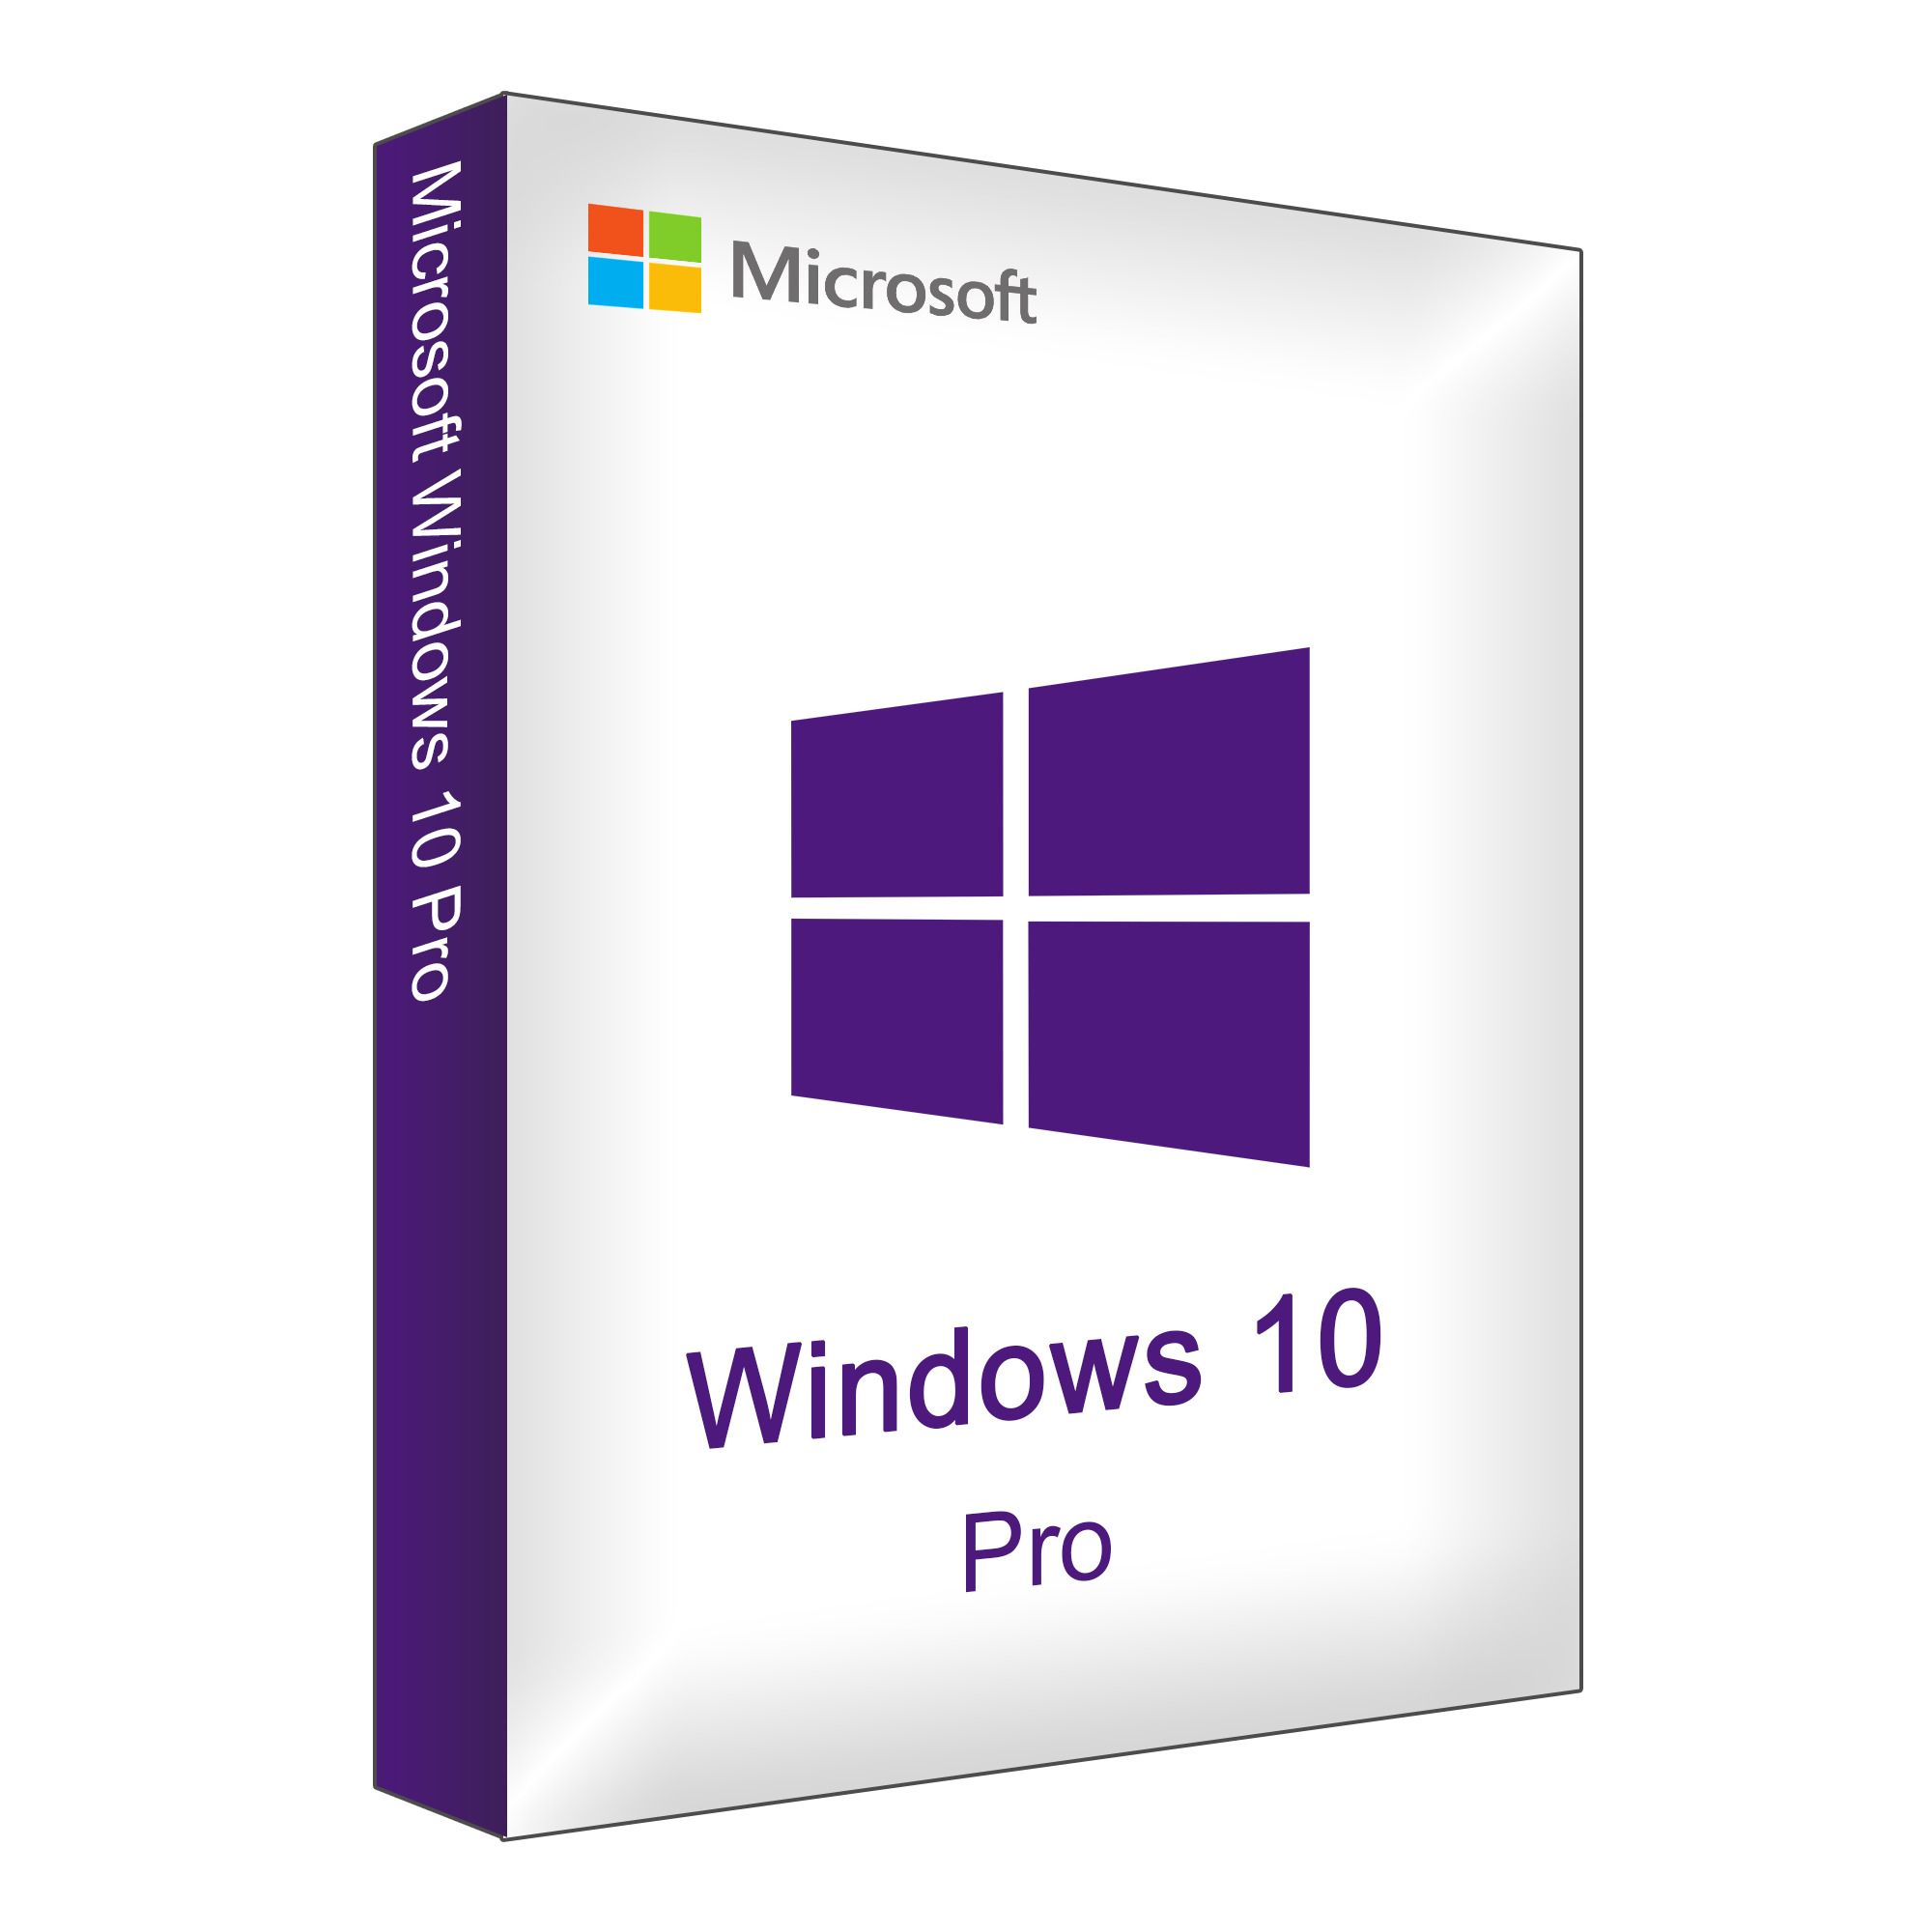 Коробочная версия купить. Windows 10 Pro. Операционная система Microsoft Windows 10 Pro. Windows 10 Pro Box. Microsoft Windows 11 Pro Pro коробка.